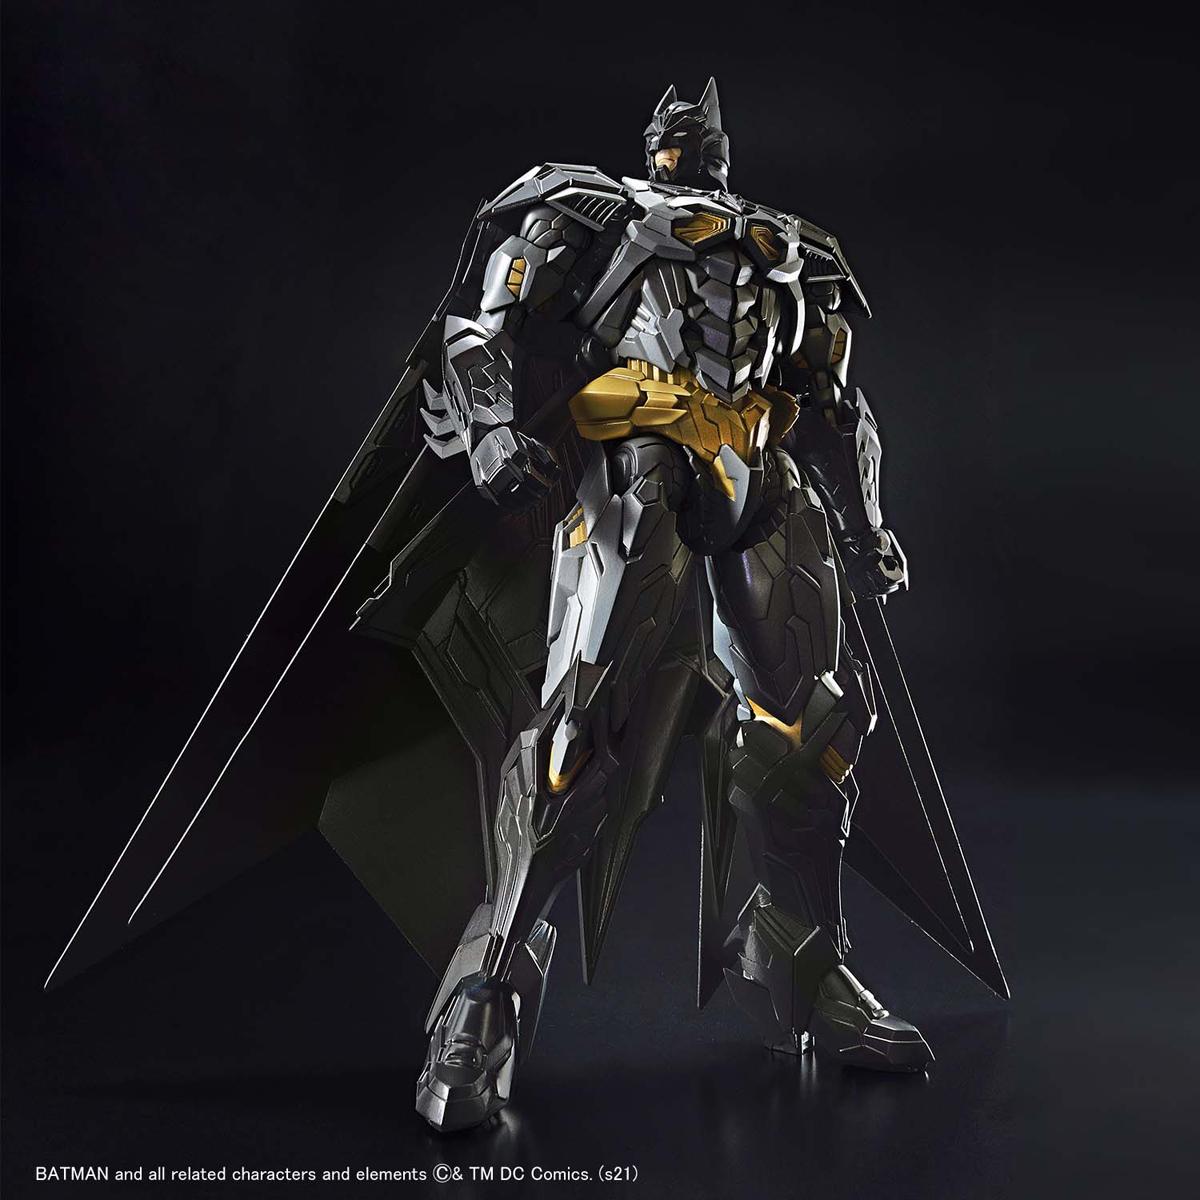 Figure-rise Standard Amplified Batman | Bandai gundam models kits ...